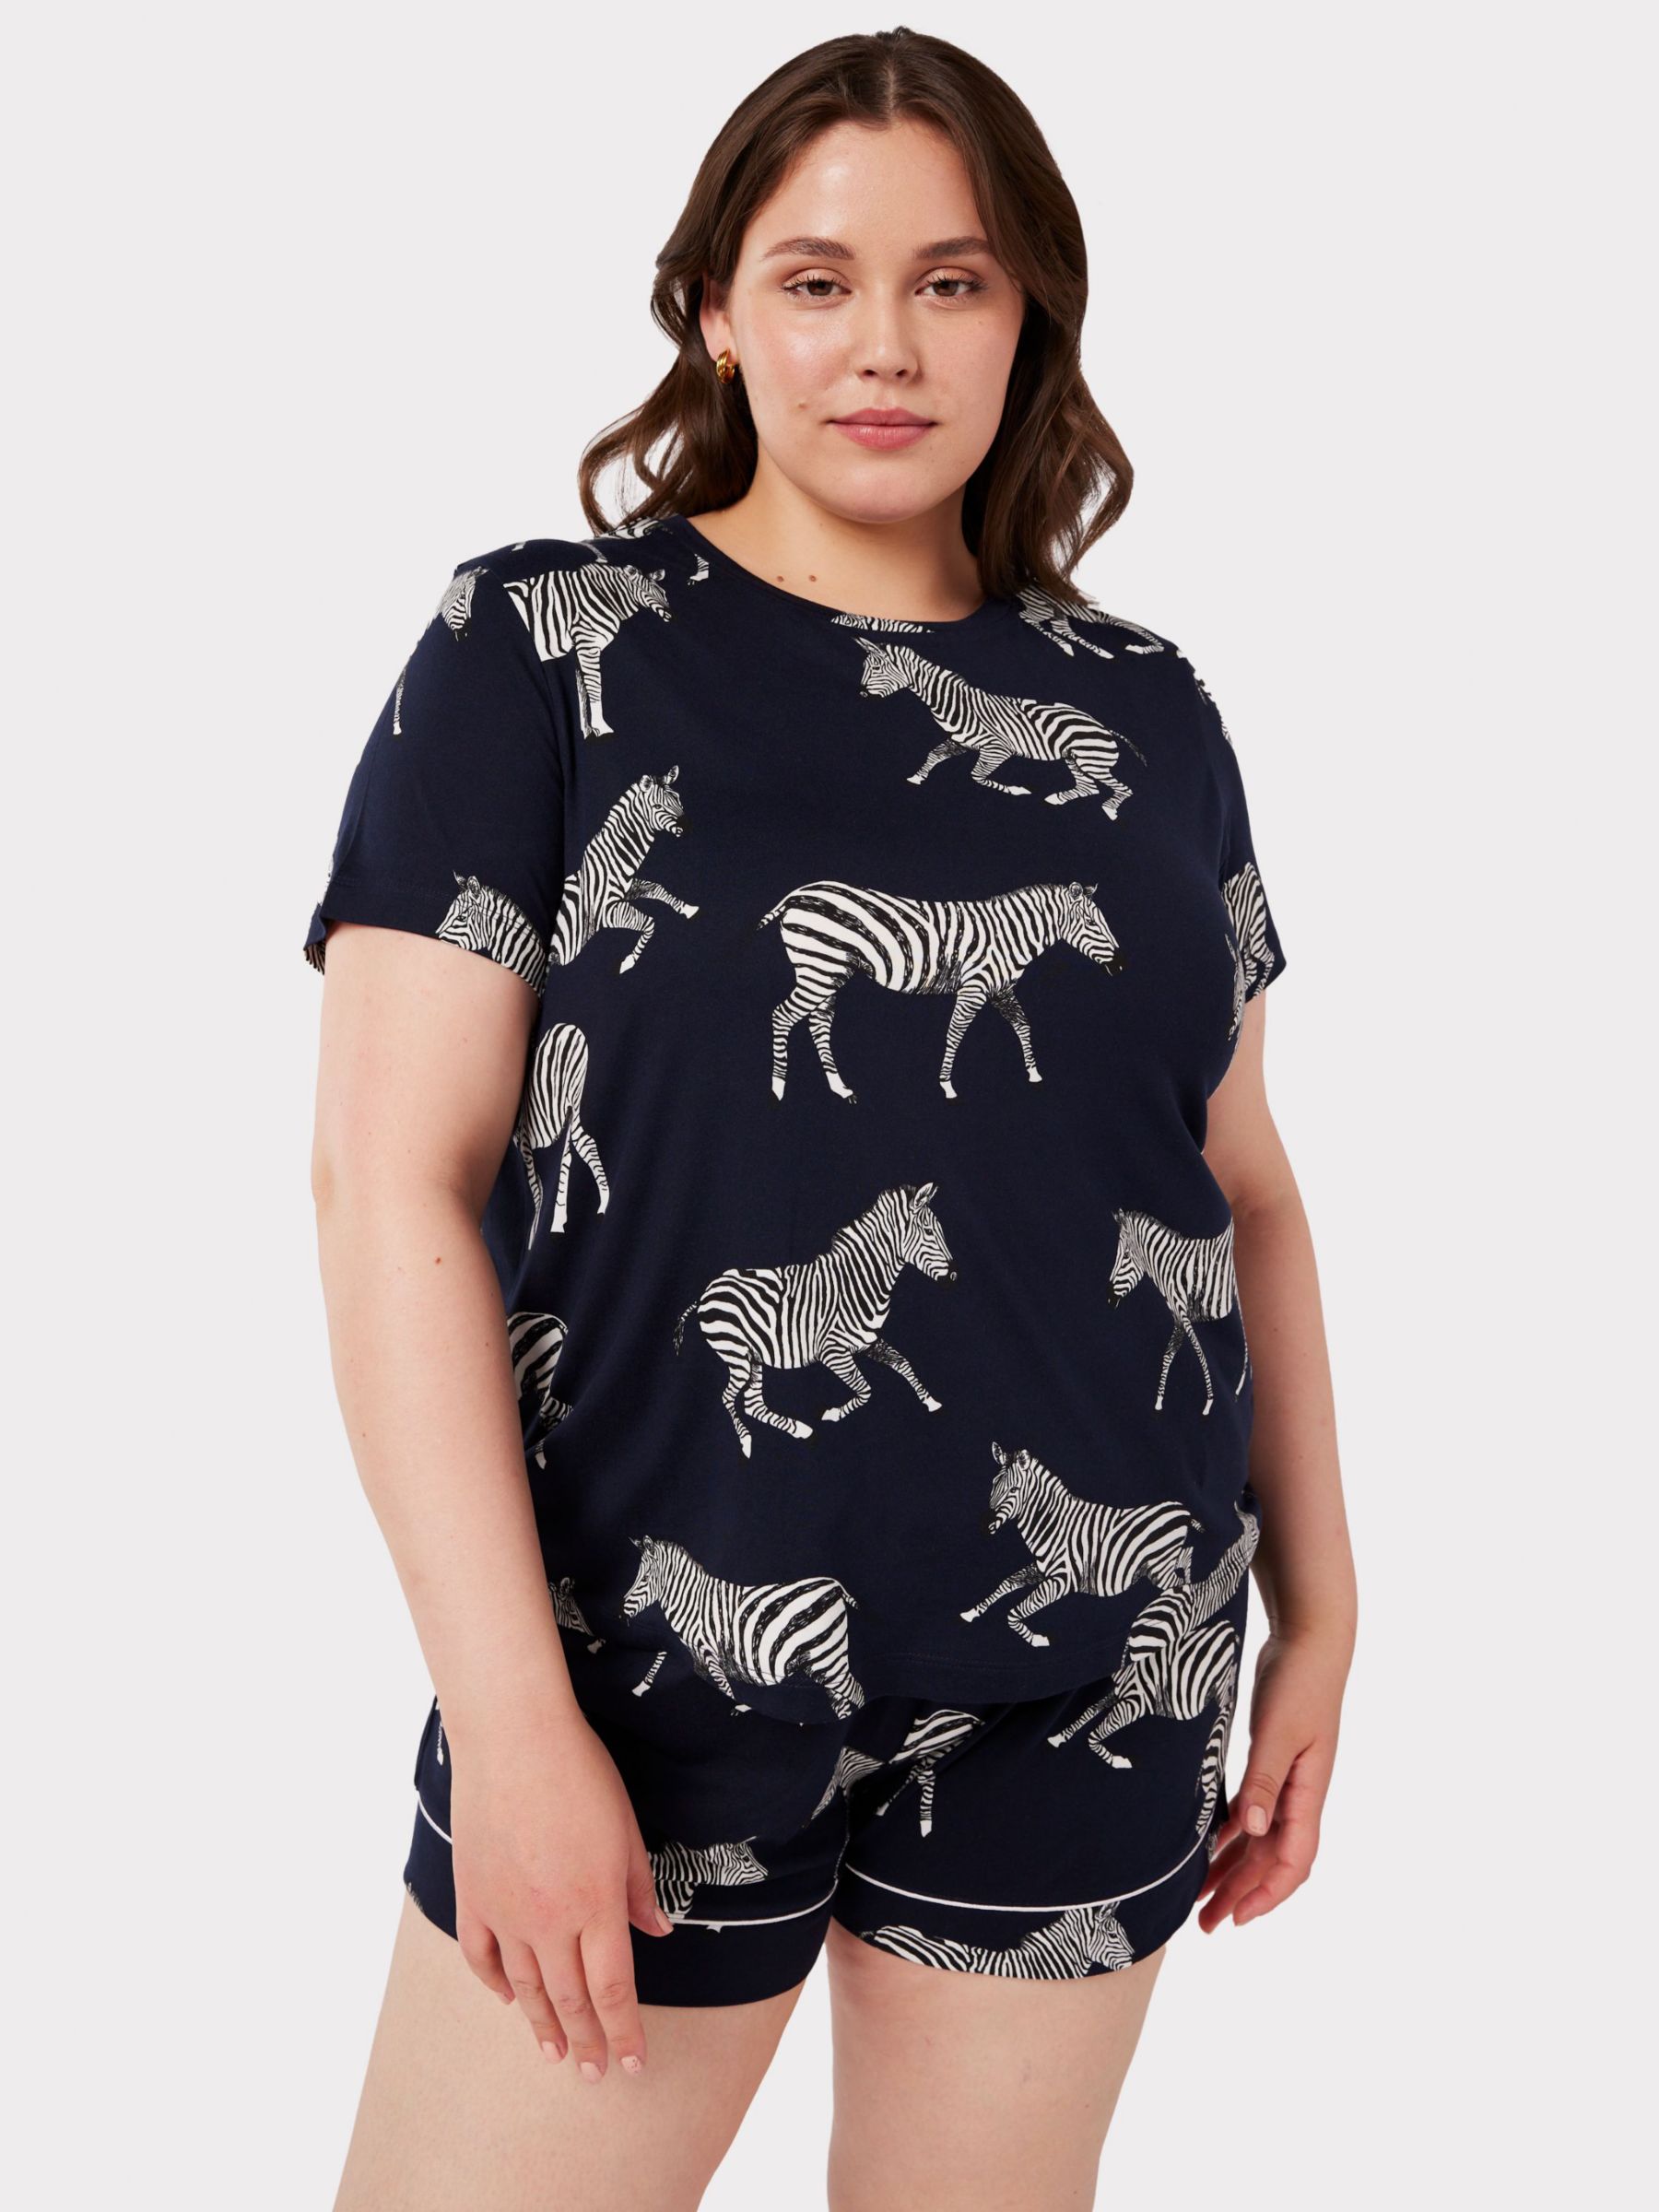 Buy Chelsea Peers Curve Zebra Short Jersey Pyjama Set, Navy Online at johnlewis.com